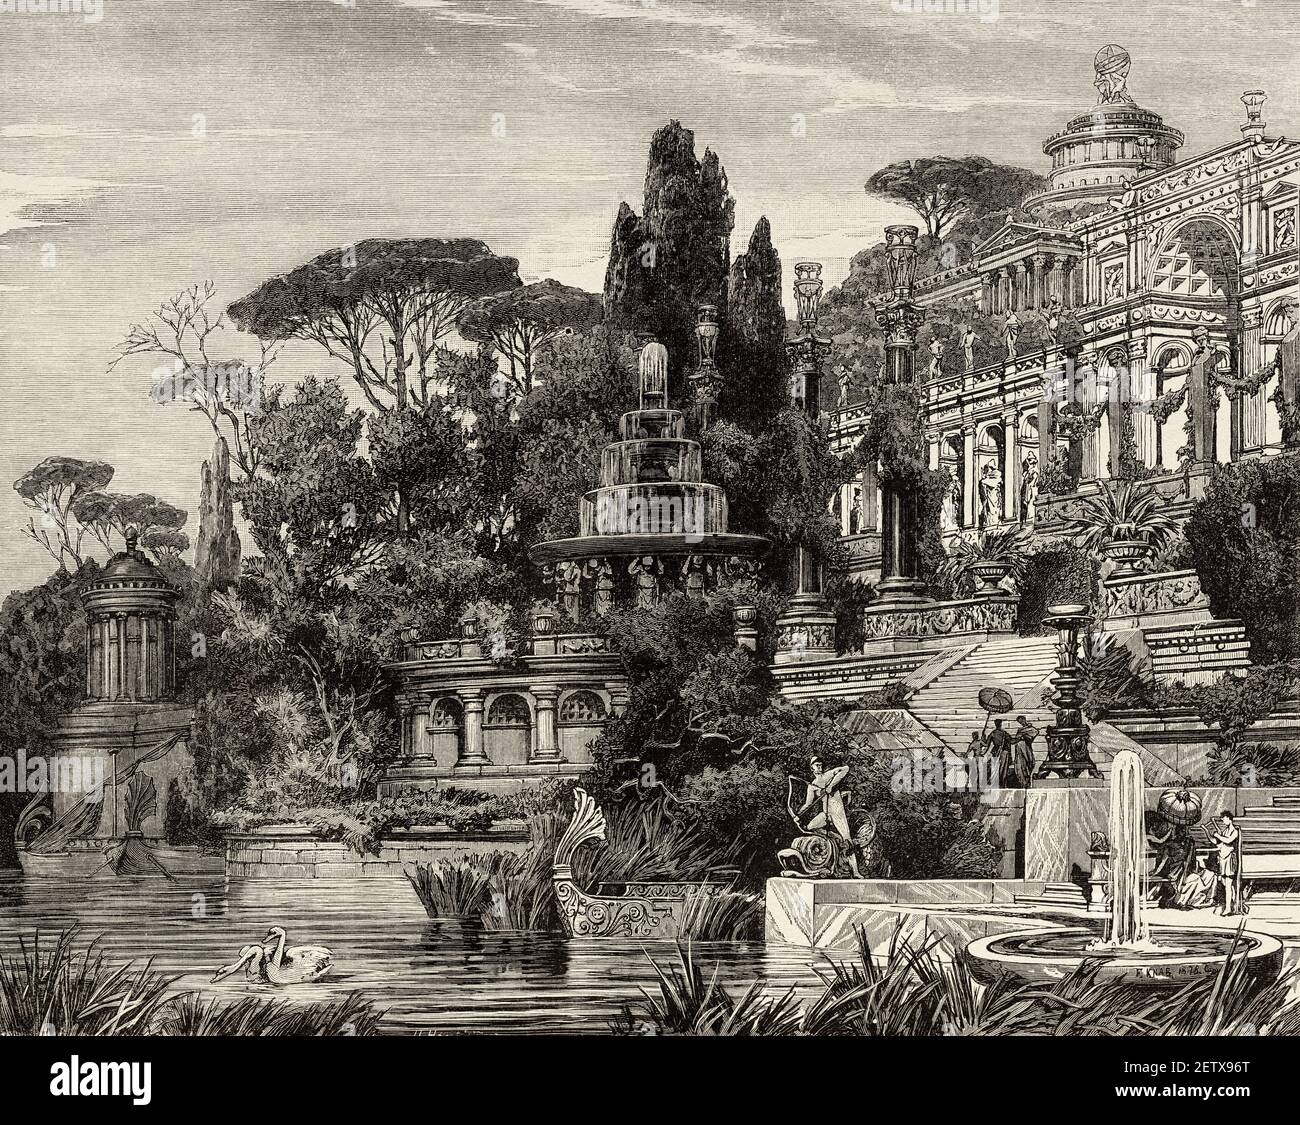 Villa romaine traditionnelle, Rome antique, Italie. Europe. Ancienne illustration gravée du XIXe siècle, El Mundo Ilustrado 1881 Banque D'Images